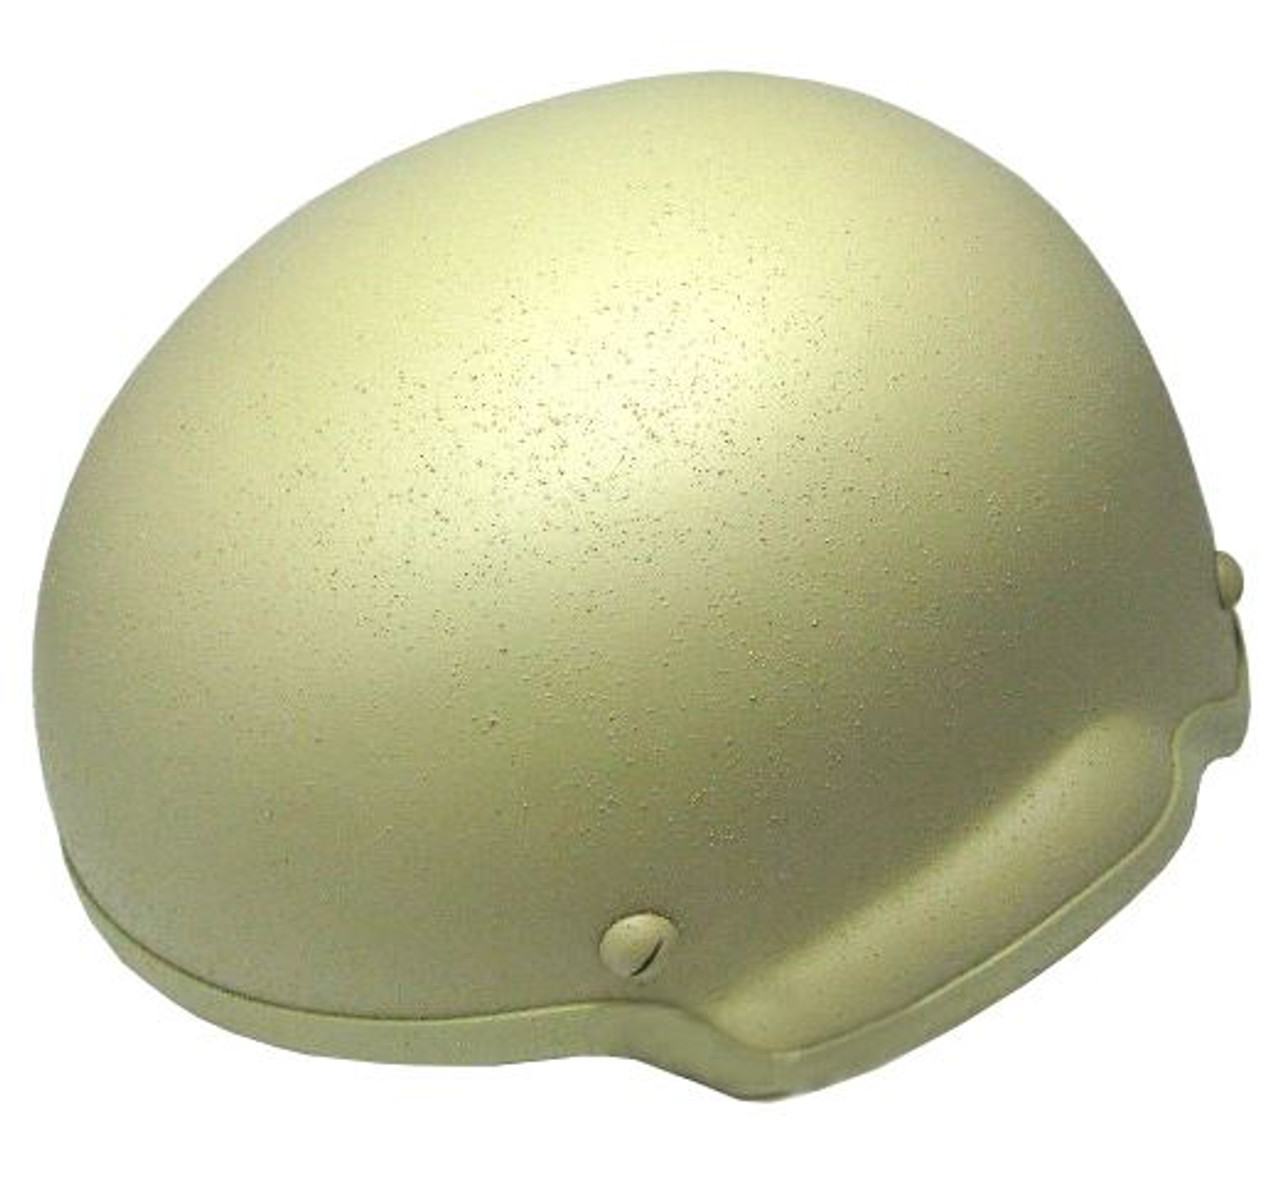 Mich 2002 Tactical Helmet Tan Khaki Sand De Fibreglass Uk